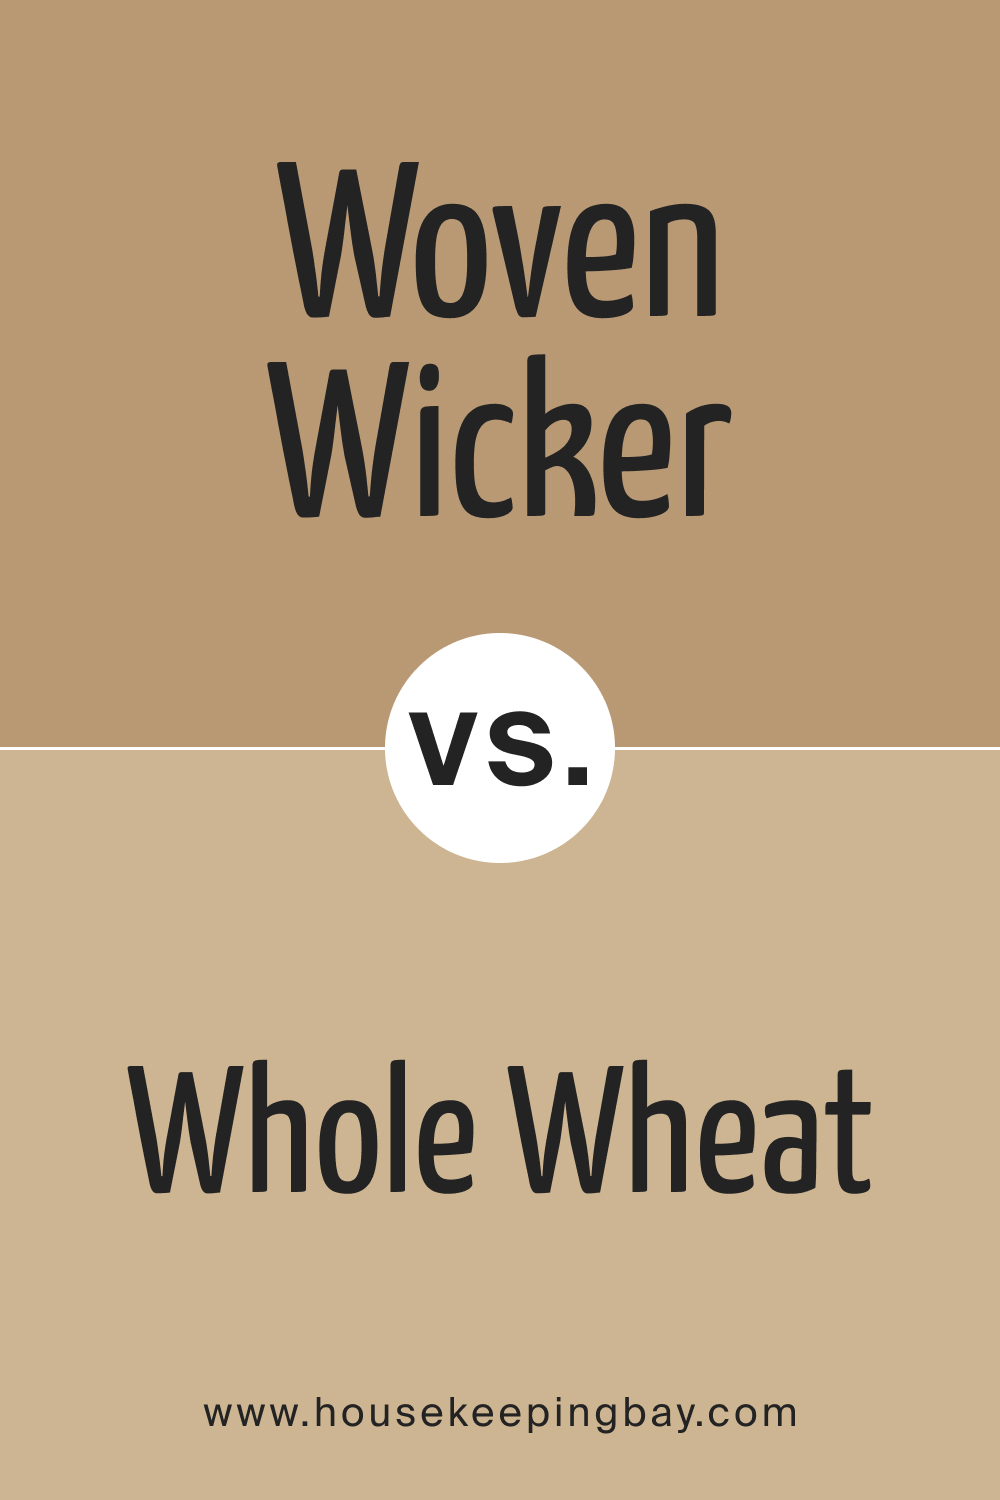 SW 9104 Woven Wicker vs. SW 6121 Whole Wheat